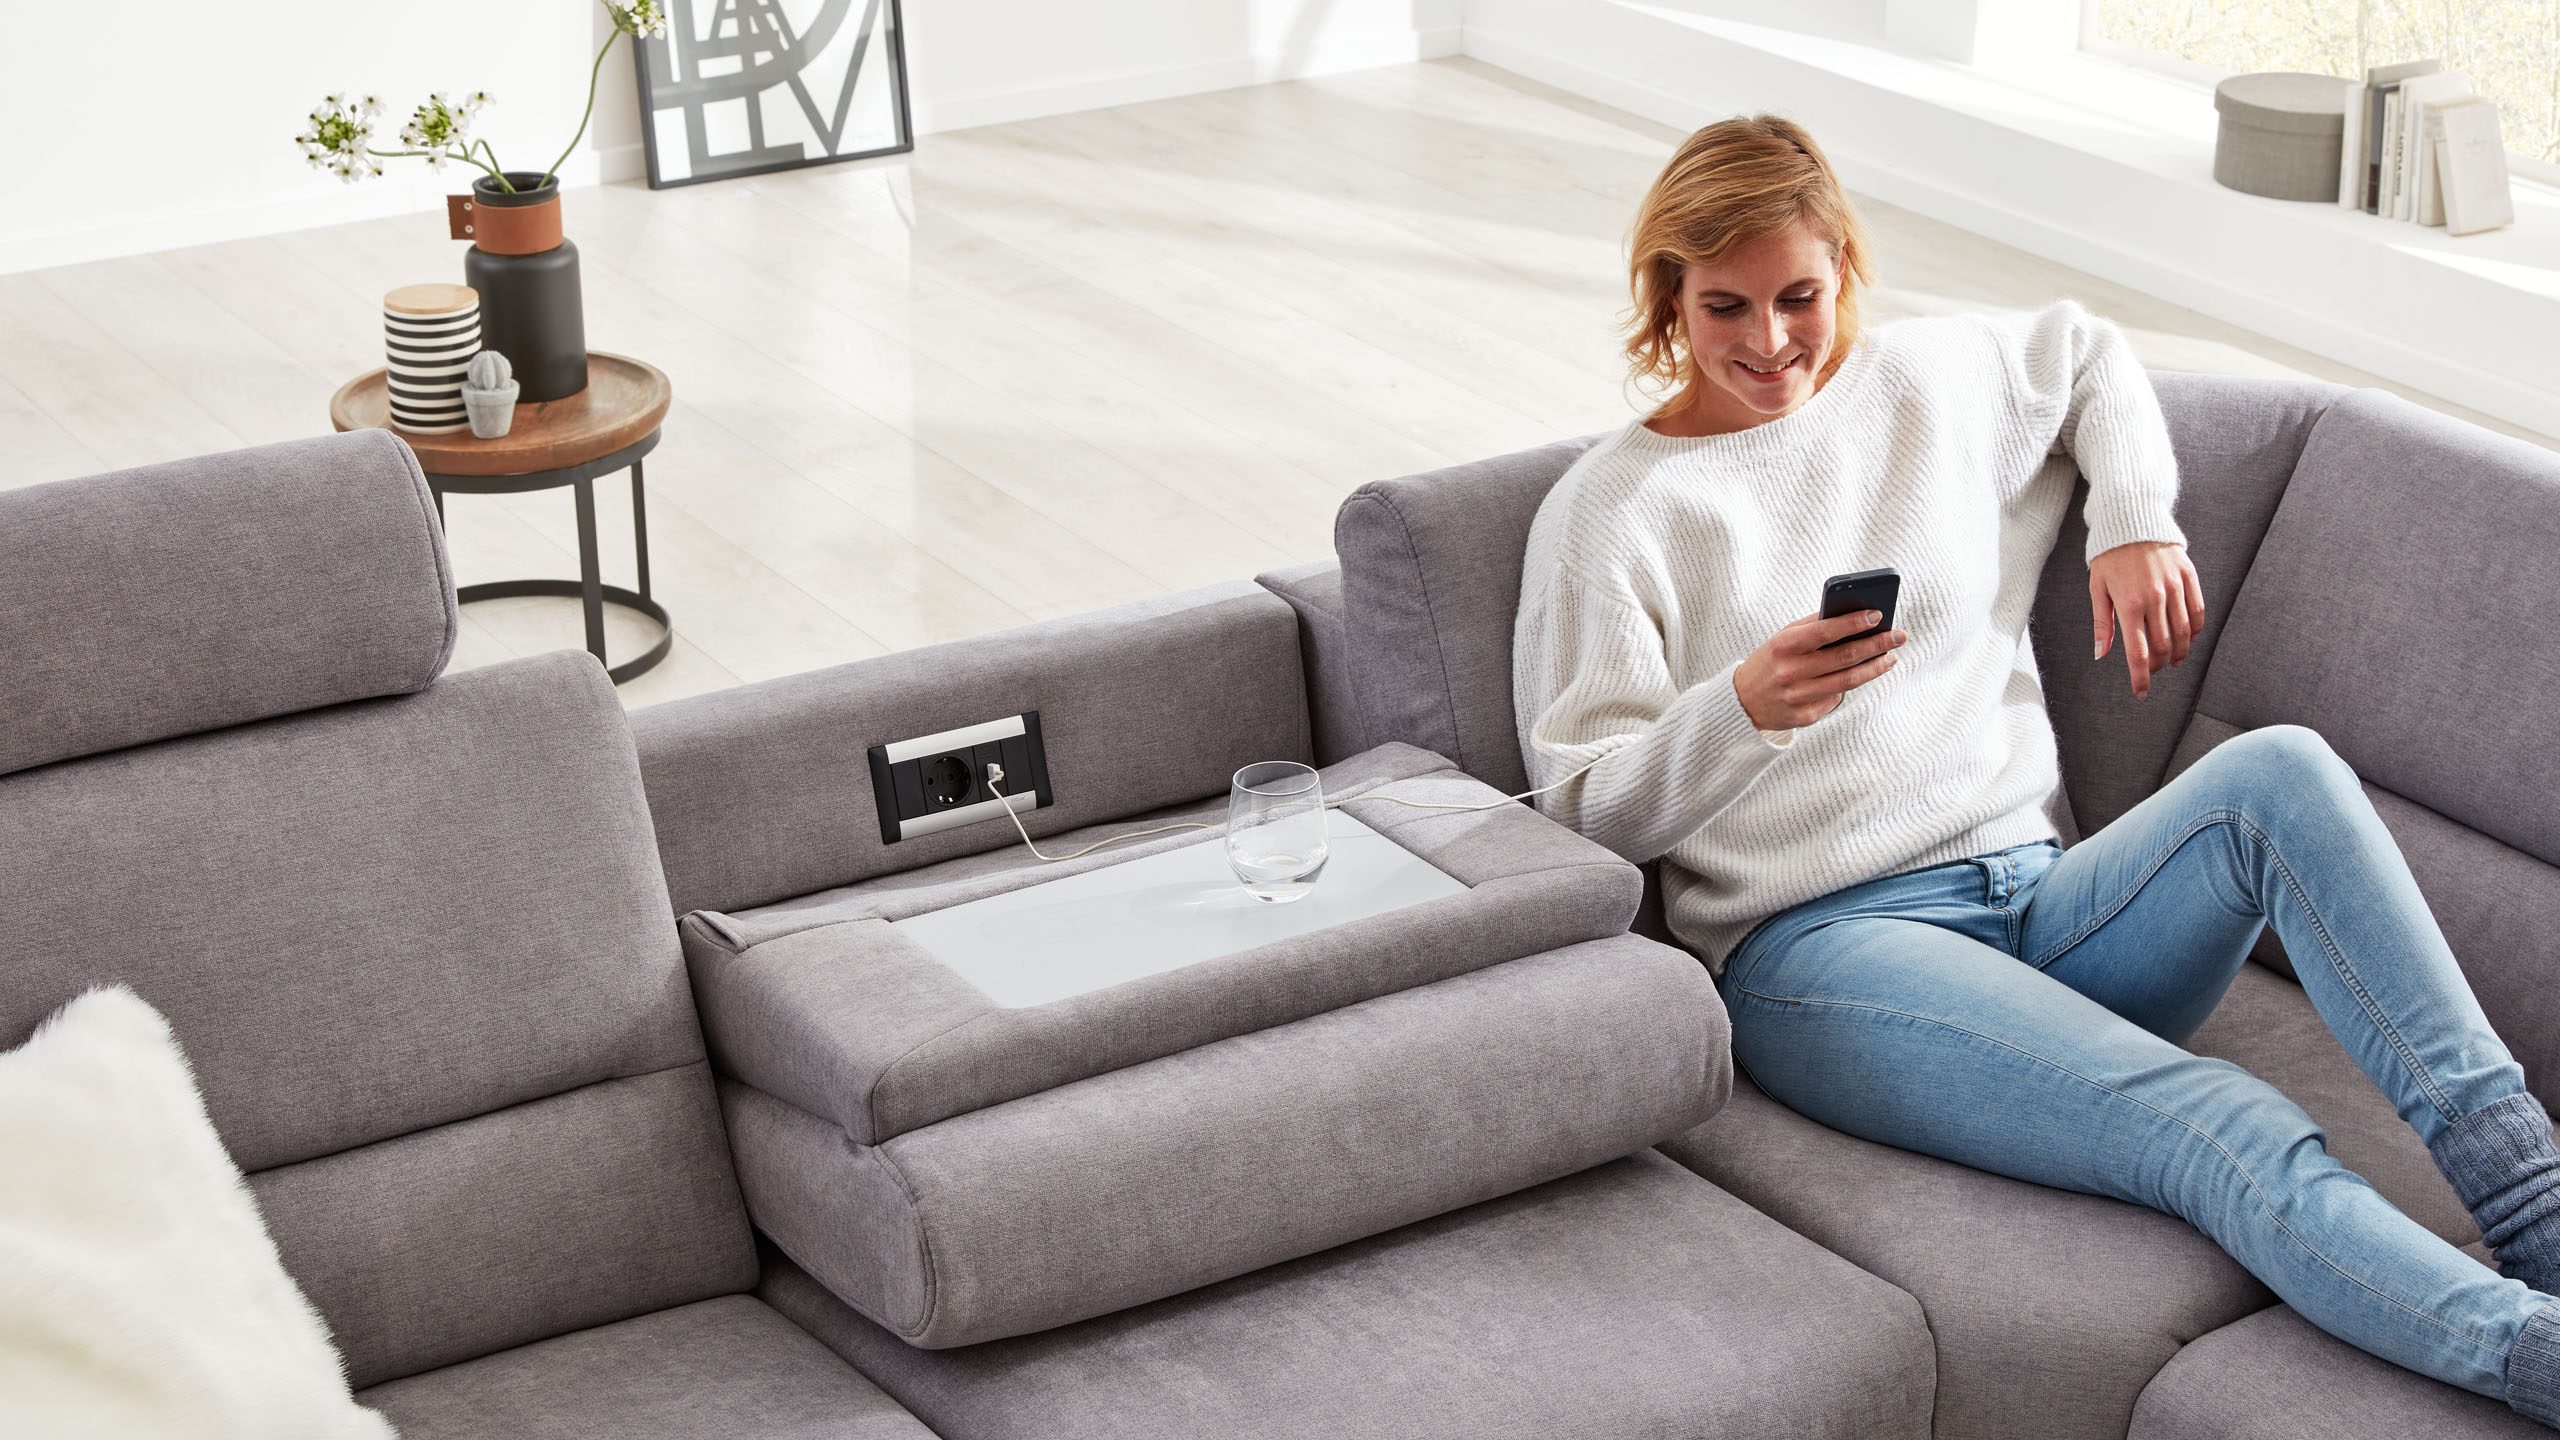 Frau liegt auf dem Sofa der Interliving Serie 4305 und lädt ihr Smartphone an einer integrierten Steckdose